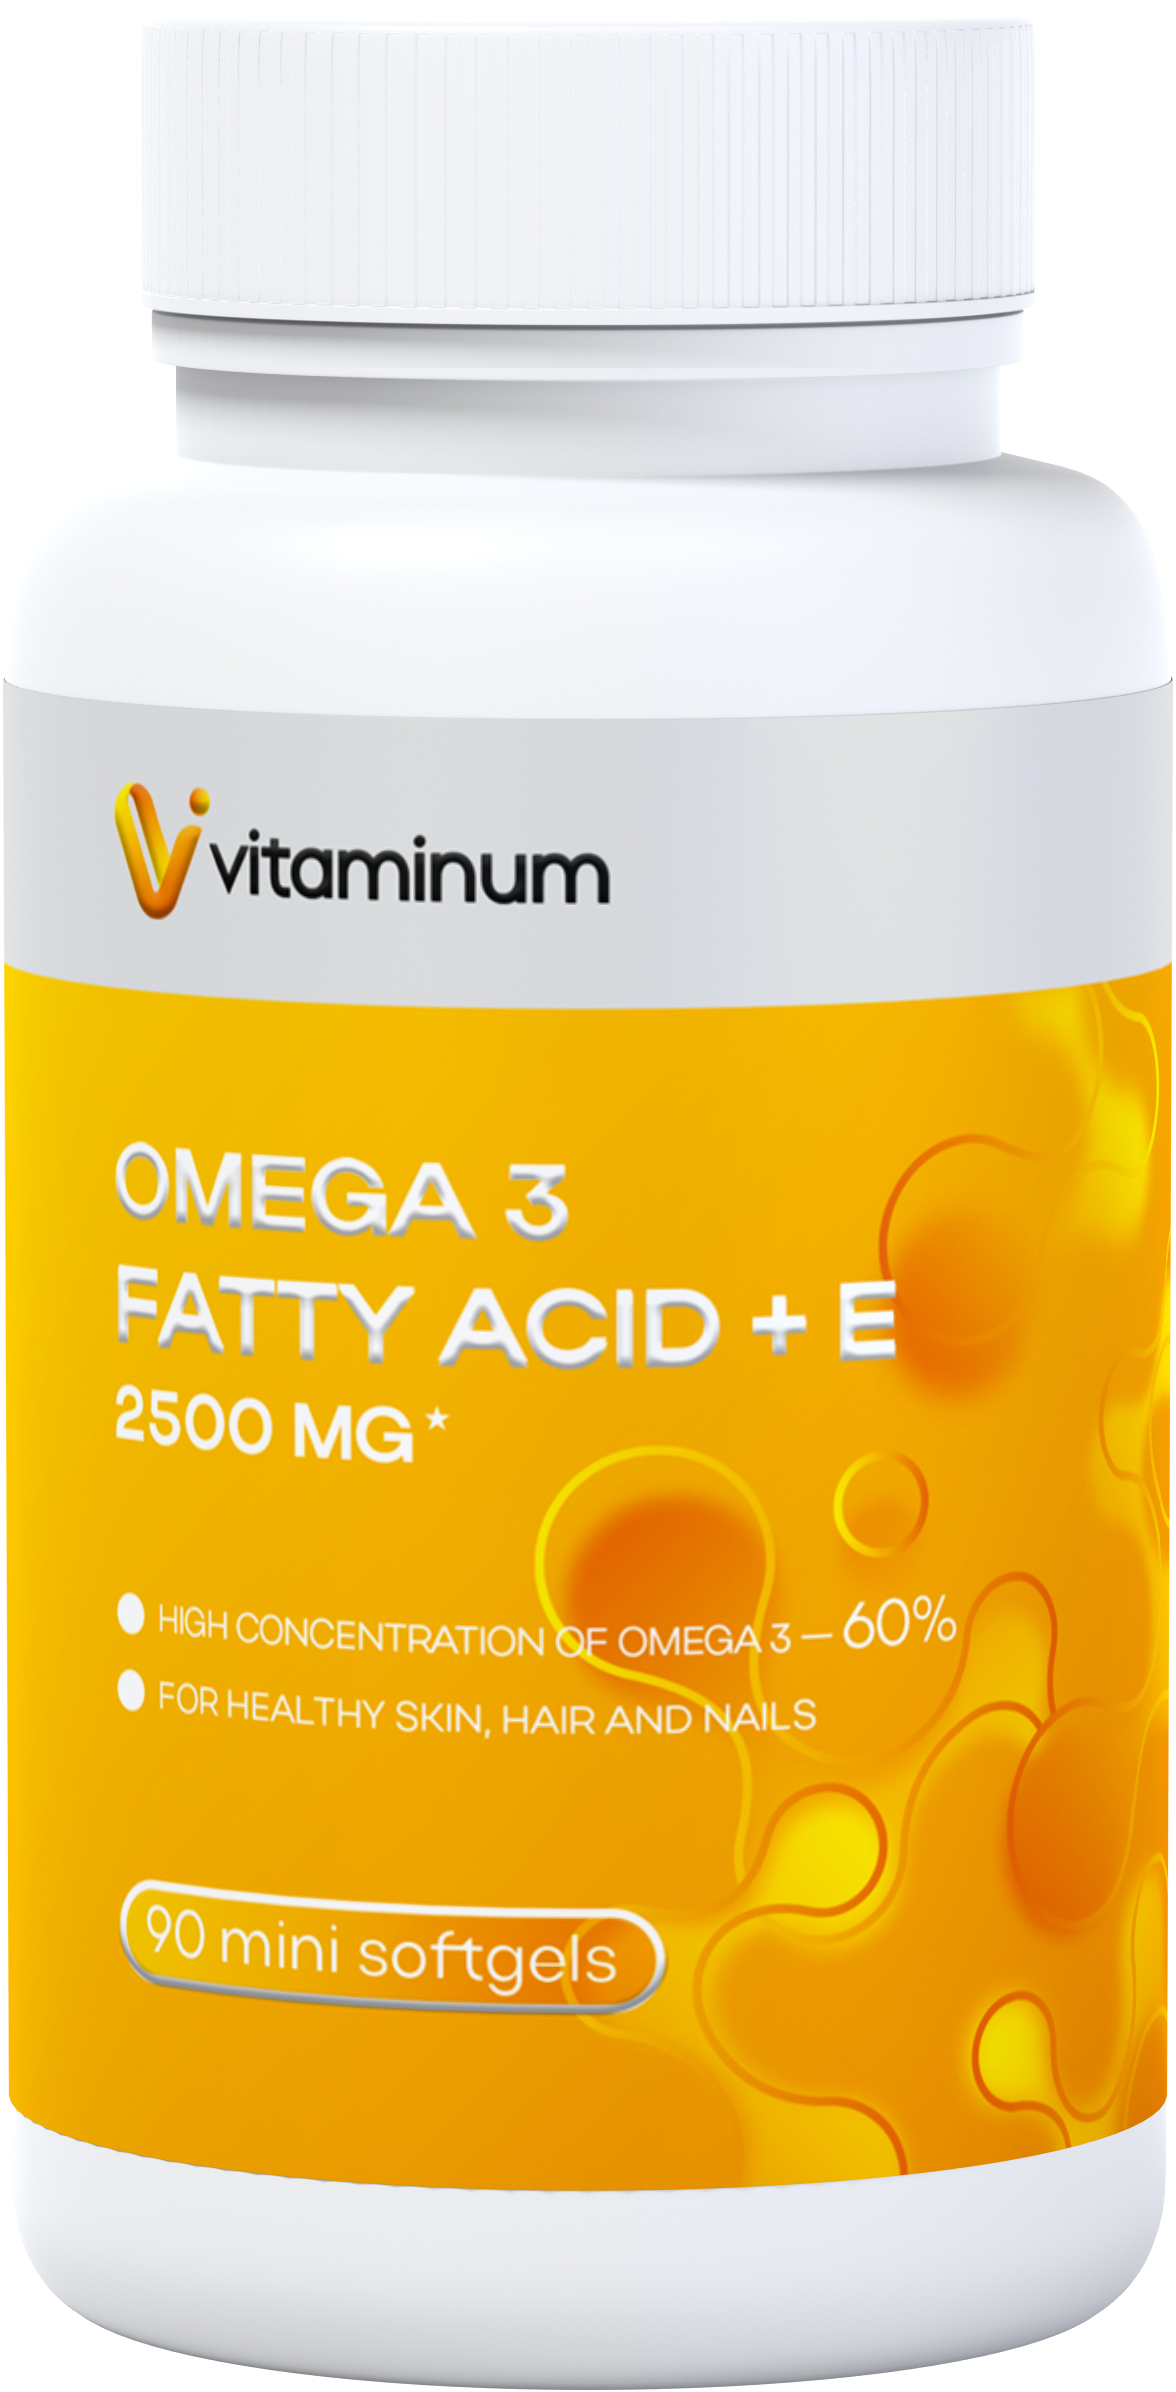  Vitaminum ОМЕГА 3 60% + витамин Е (2500 MG*) 90 капсул 700 мг   в Выборге